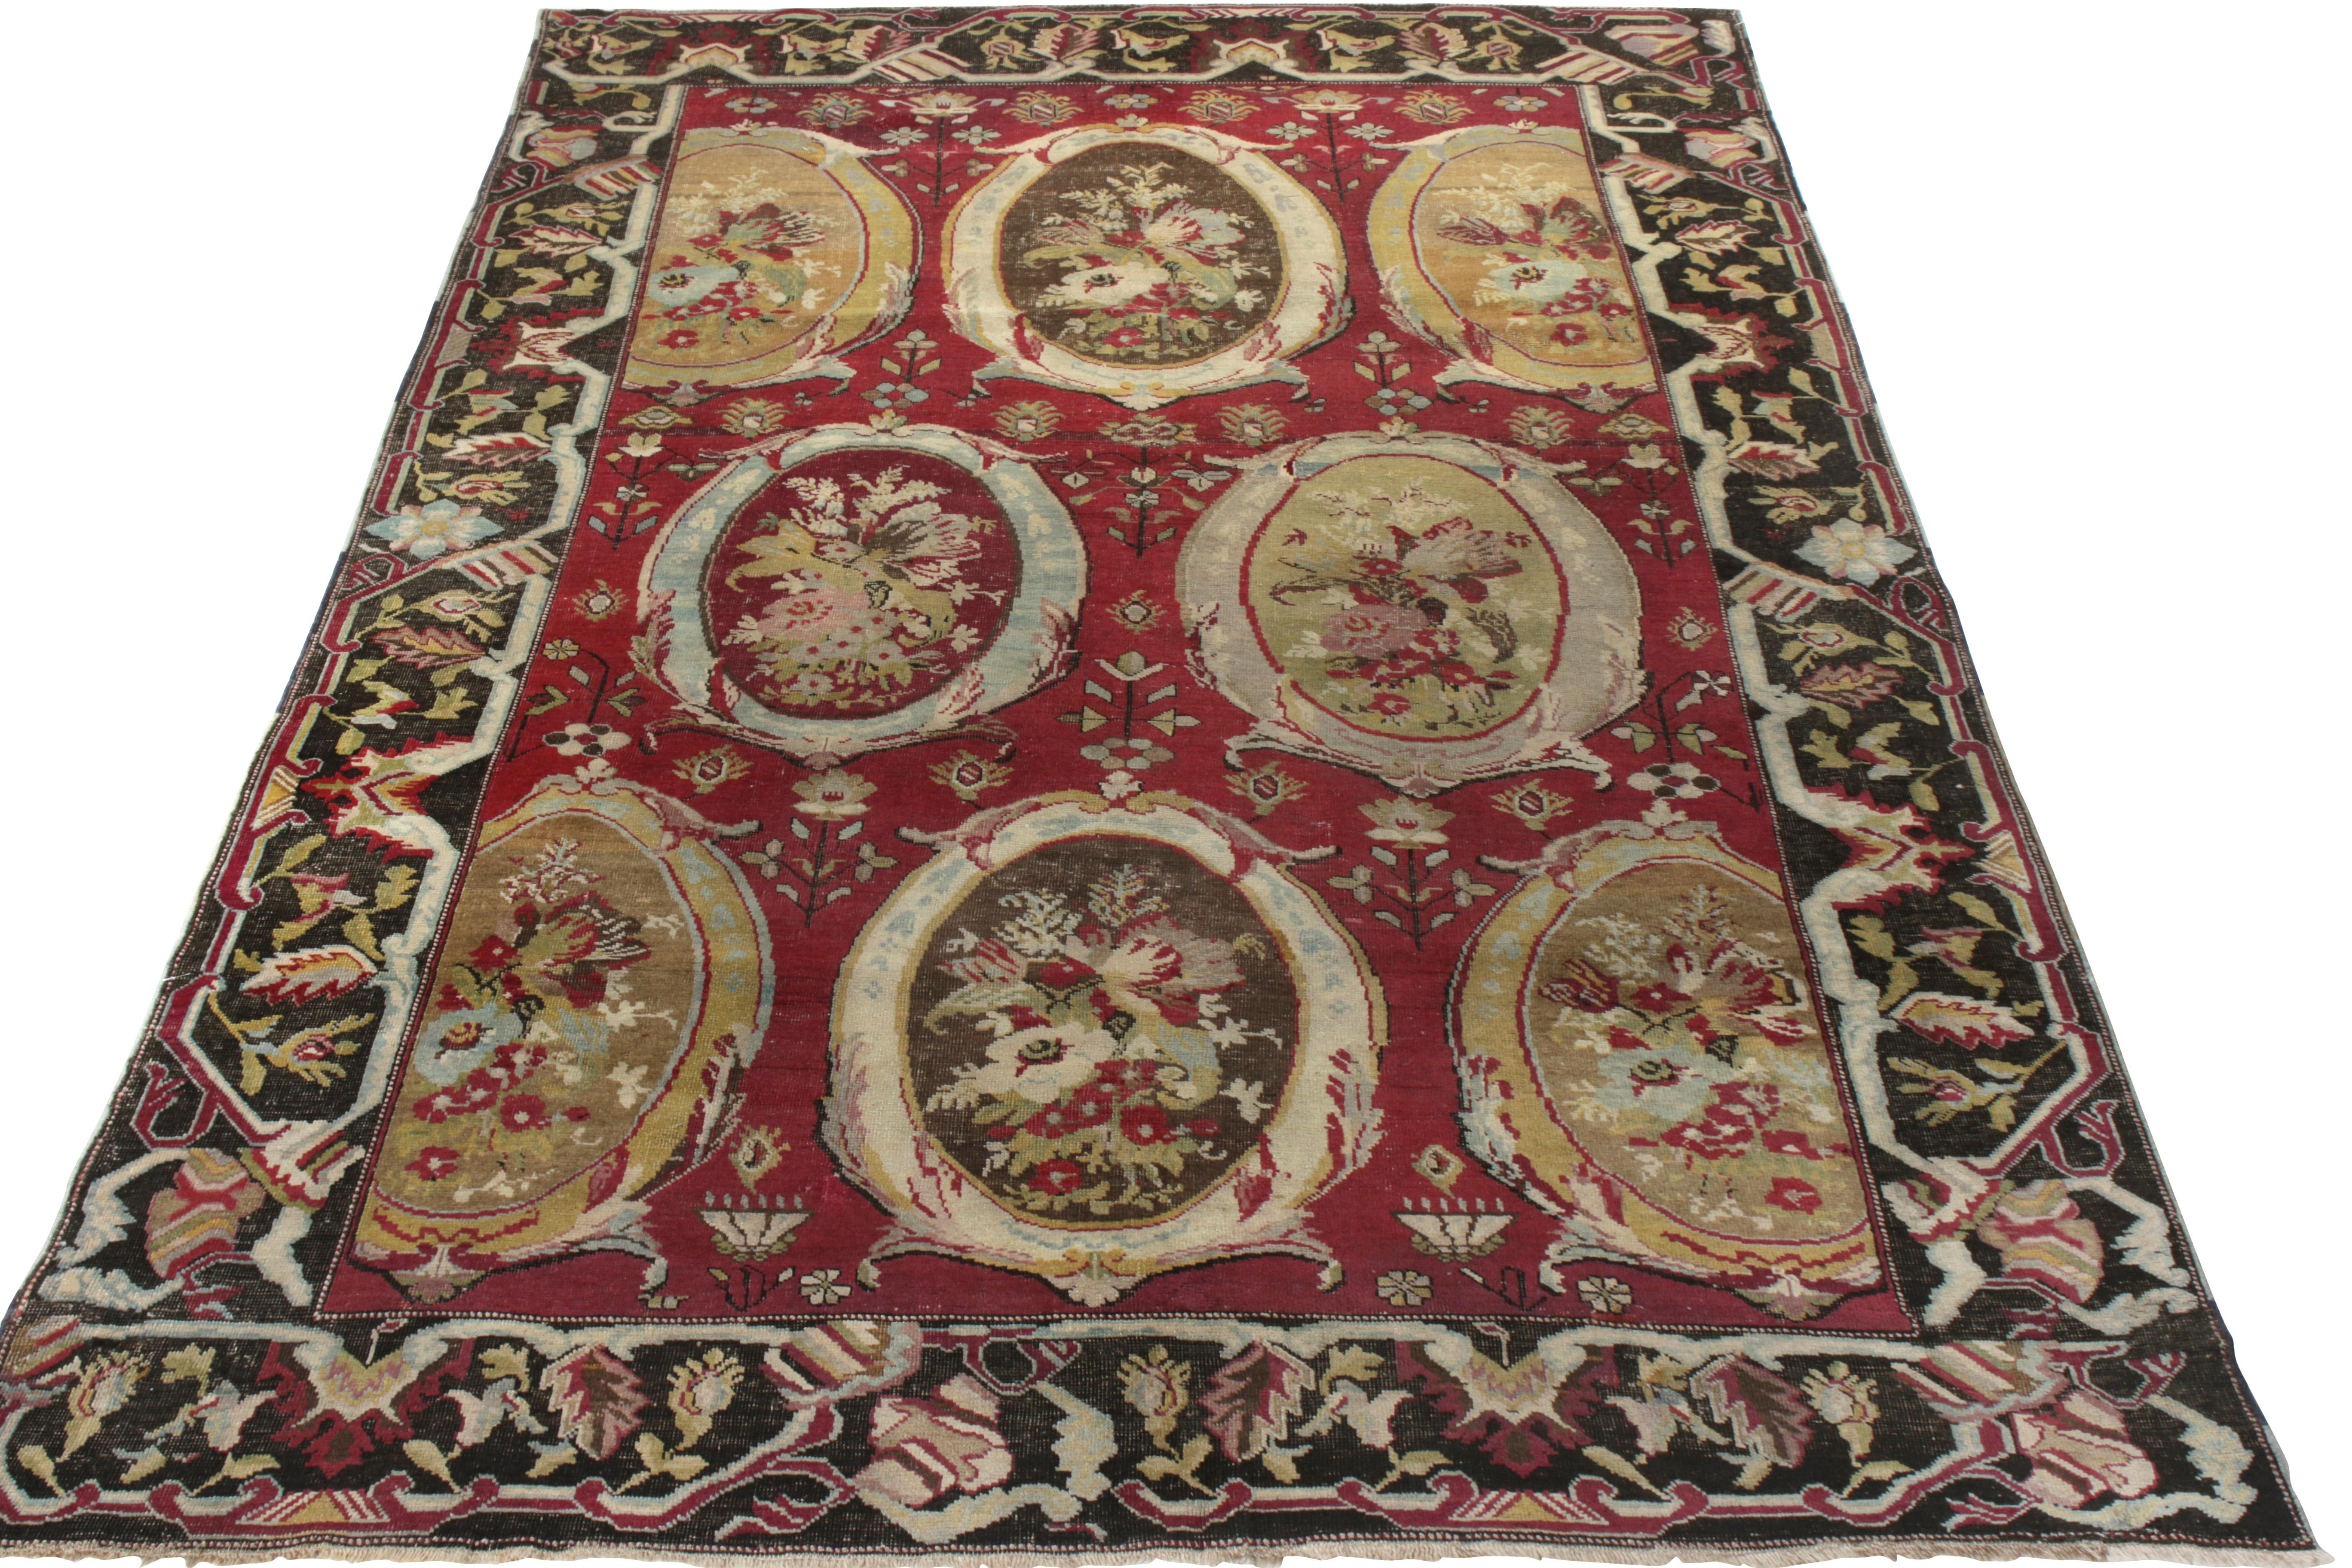 Datant d'environ 1880-1890, ce tapis Karabagh antique de 5x9 est originaire de Russie. Noué à la main en laine, ce tapis présente des motifs de cartouches dans les tons verts et jaunes, confortablement posés sur un riche fond rouge marron, le tout